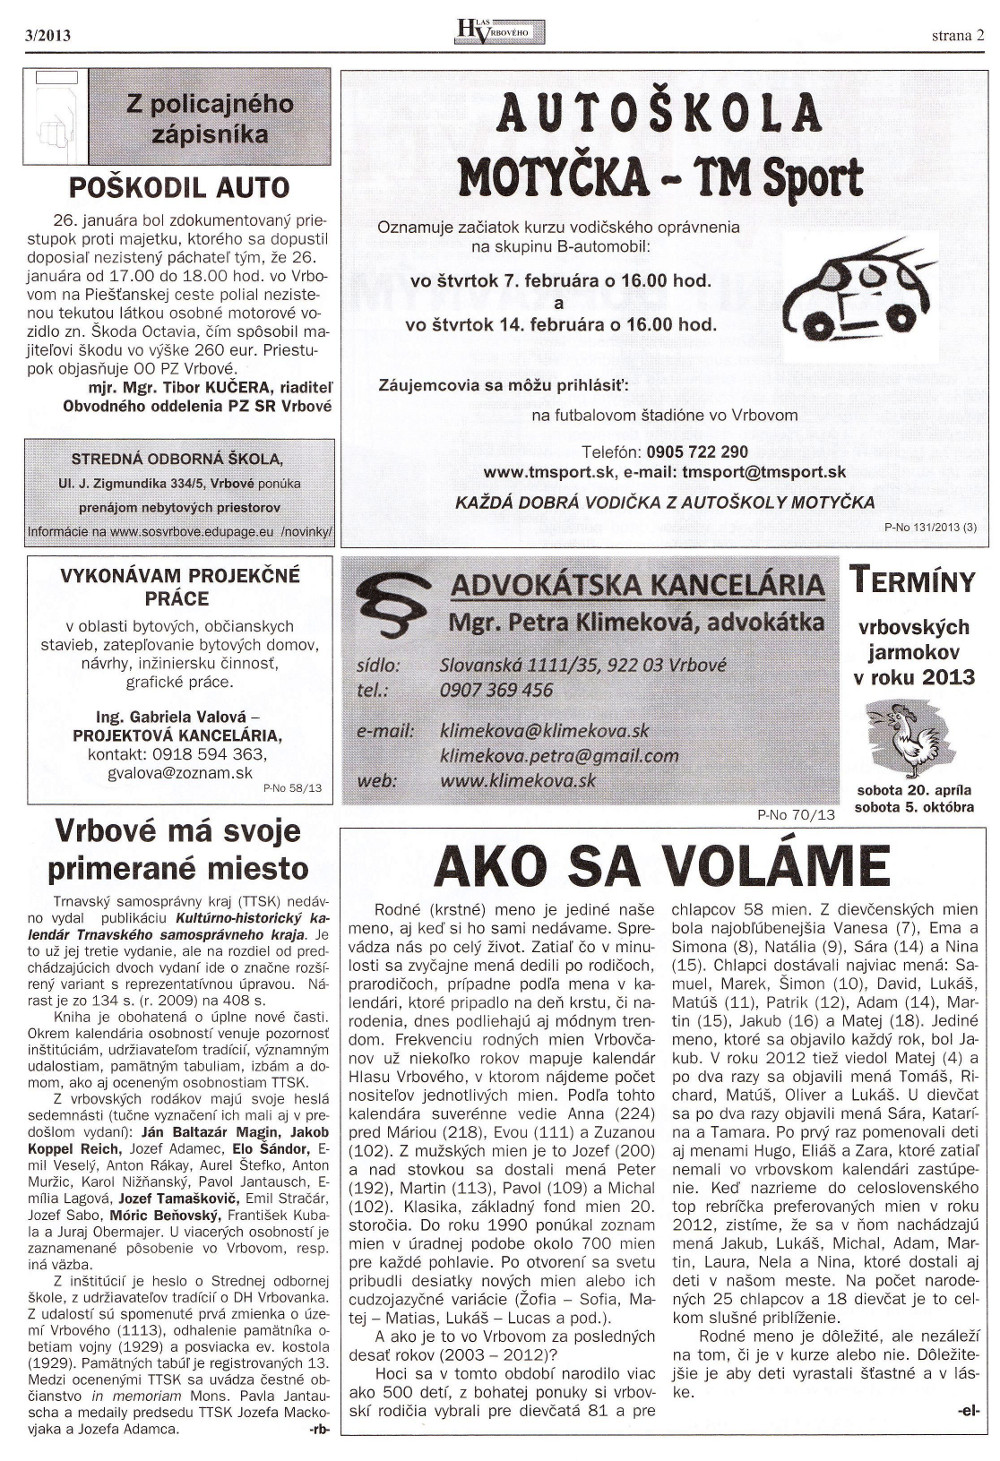 Hlas Vrbového 03/2013, strana 2